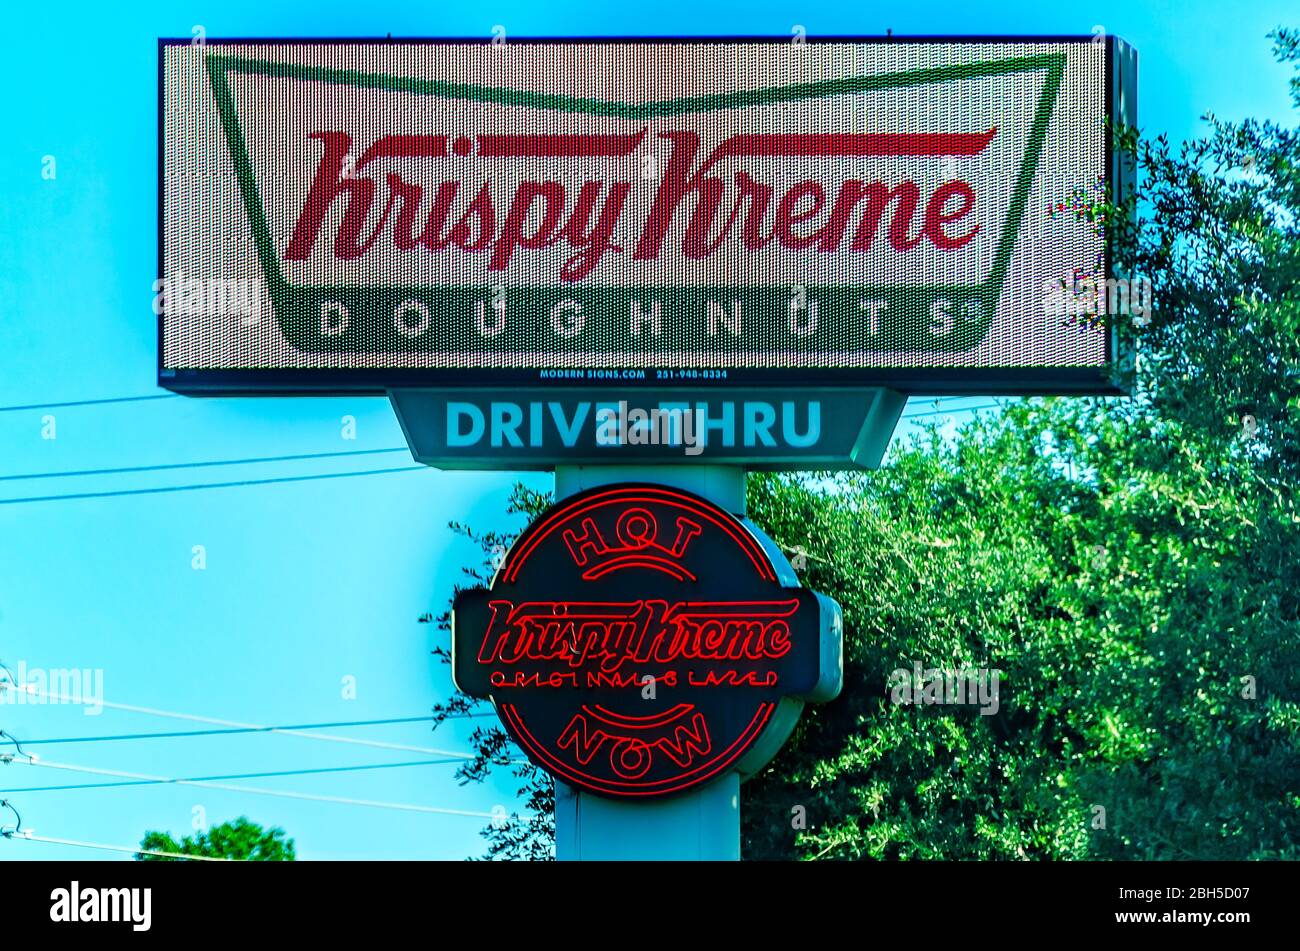 Le signe Krispy Kreme donne le signe « Hot Now », qui est affiché le 21 avril 2020 à Mobile, Alabama. Krispy Kreme a été fondée en 1937. Banque D'Images